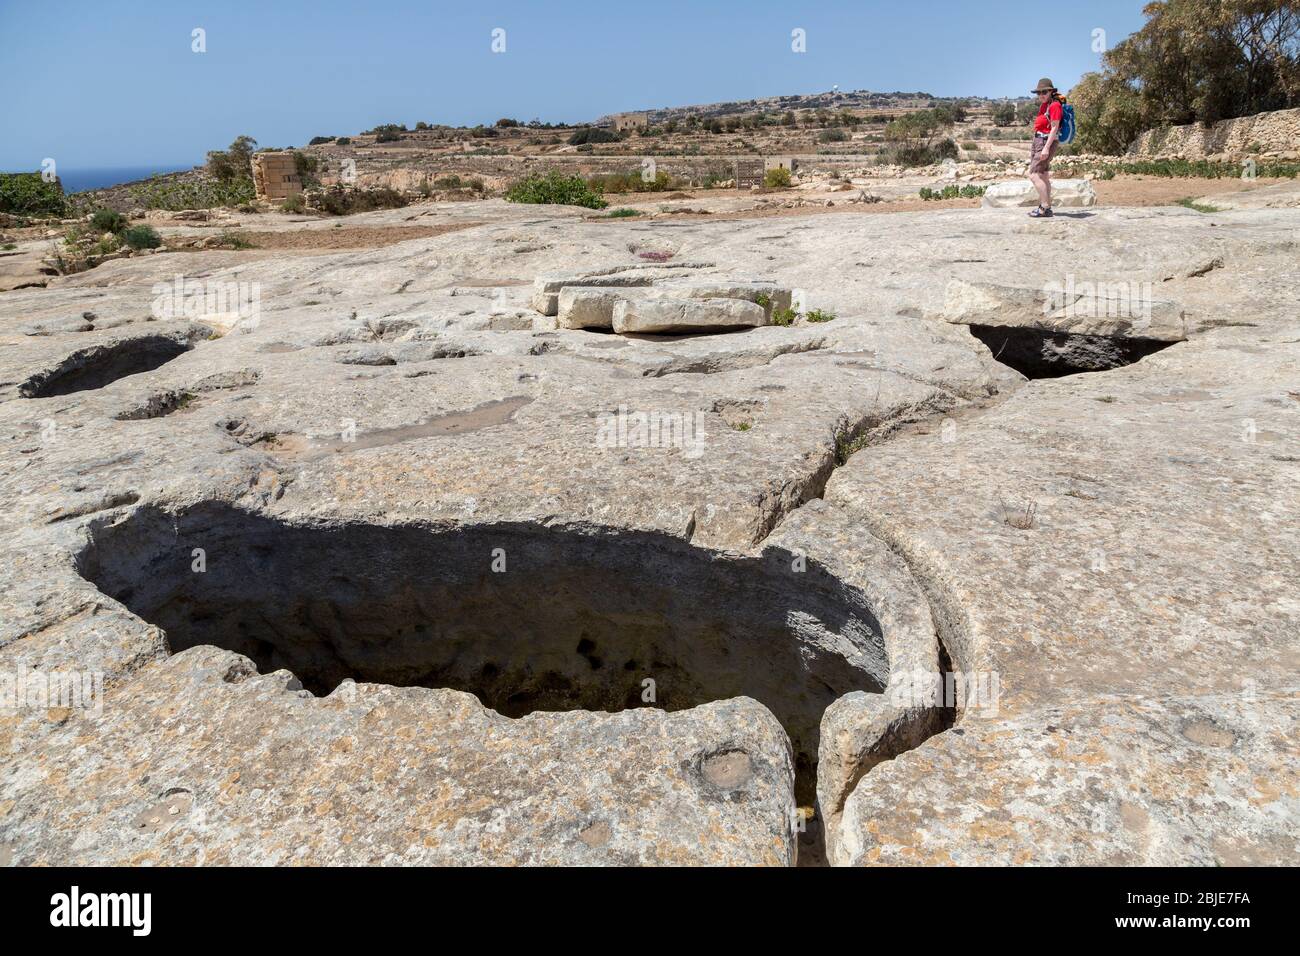 Misqa serbatoi, cisterne di stoccaggio dell'acqua con canali di drenaggio collegati al tempio preistorico di Mnajdra, Qrendi, Malta Foto Stock